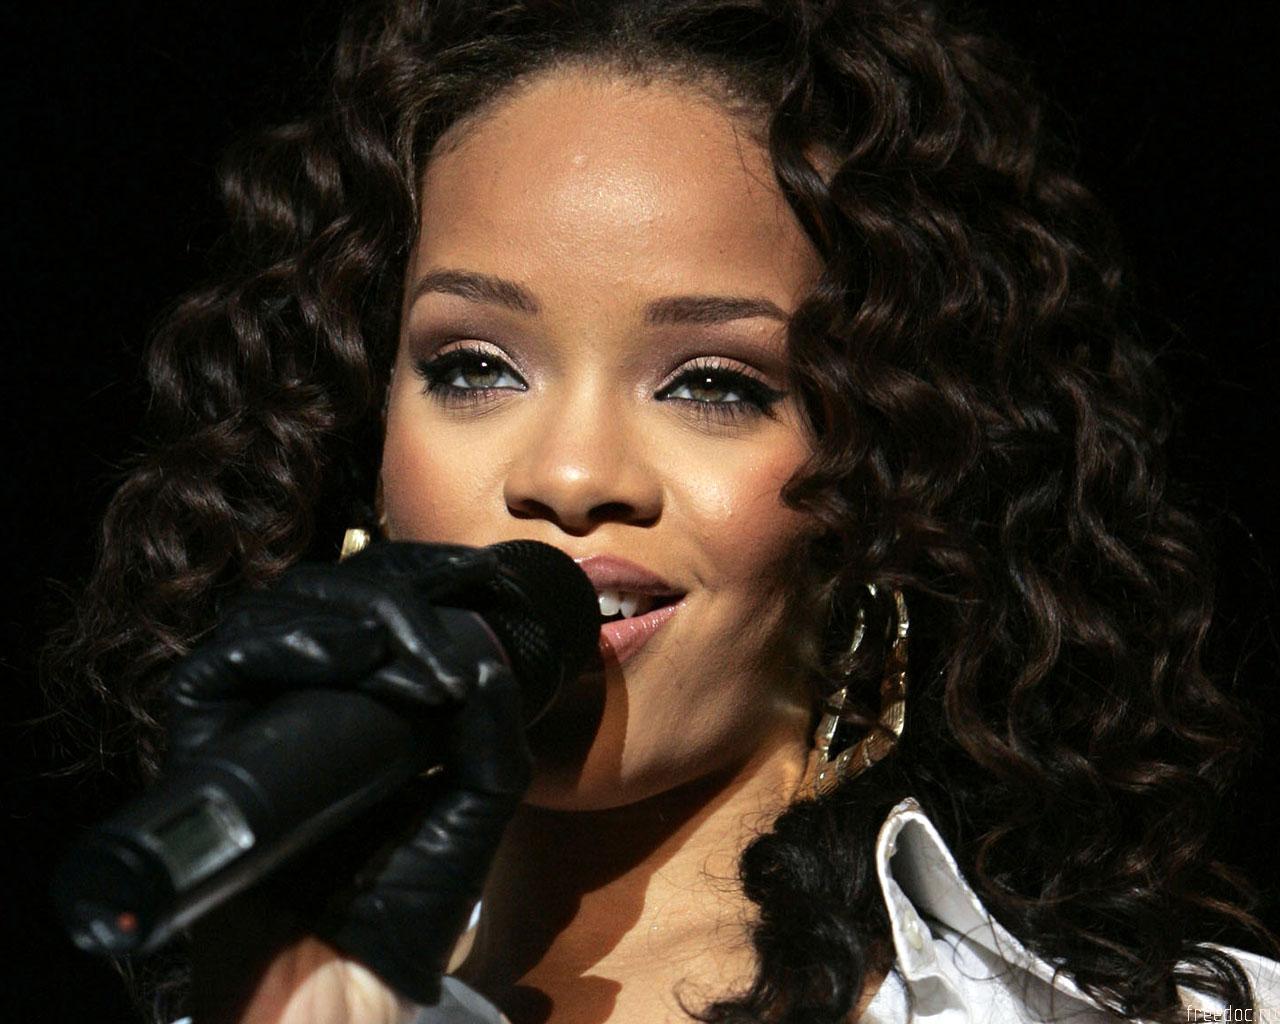 Fondos de Pantalla Rihanna Música descargar imagenes